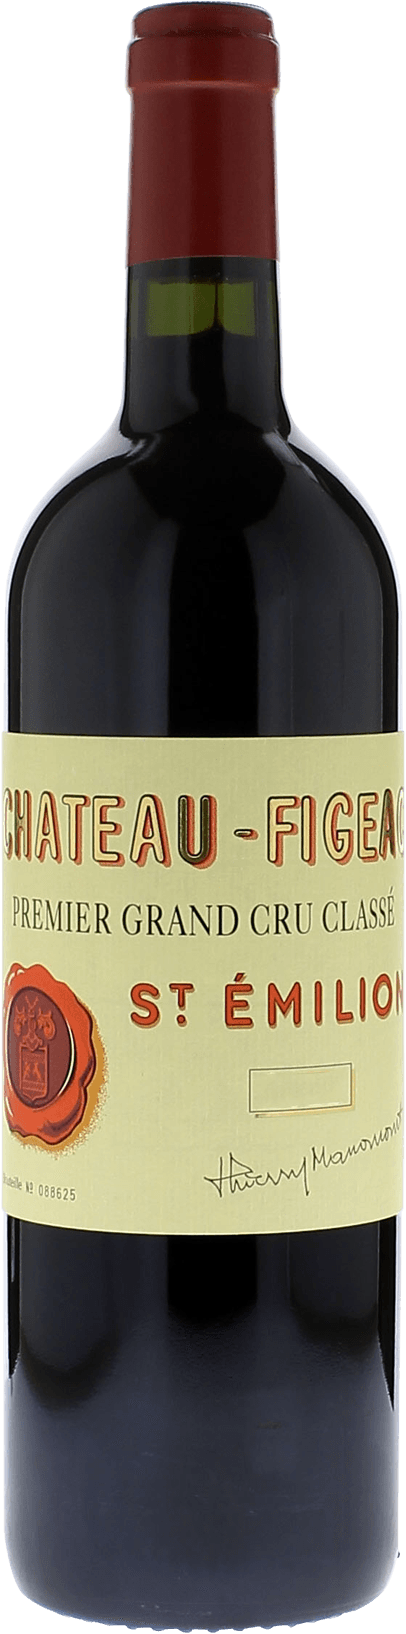 Figeac 2020 1er Grand cru class Saint-Emilion, Bordeaux rouge